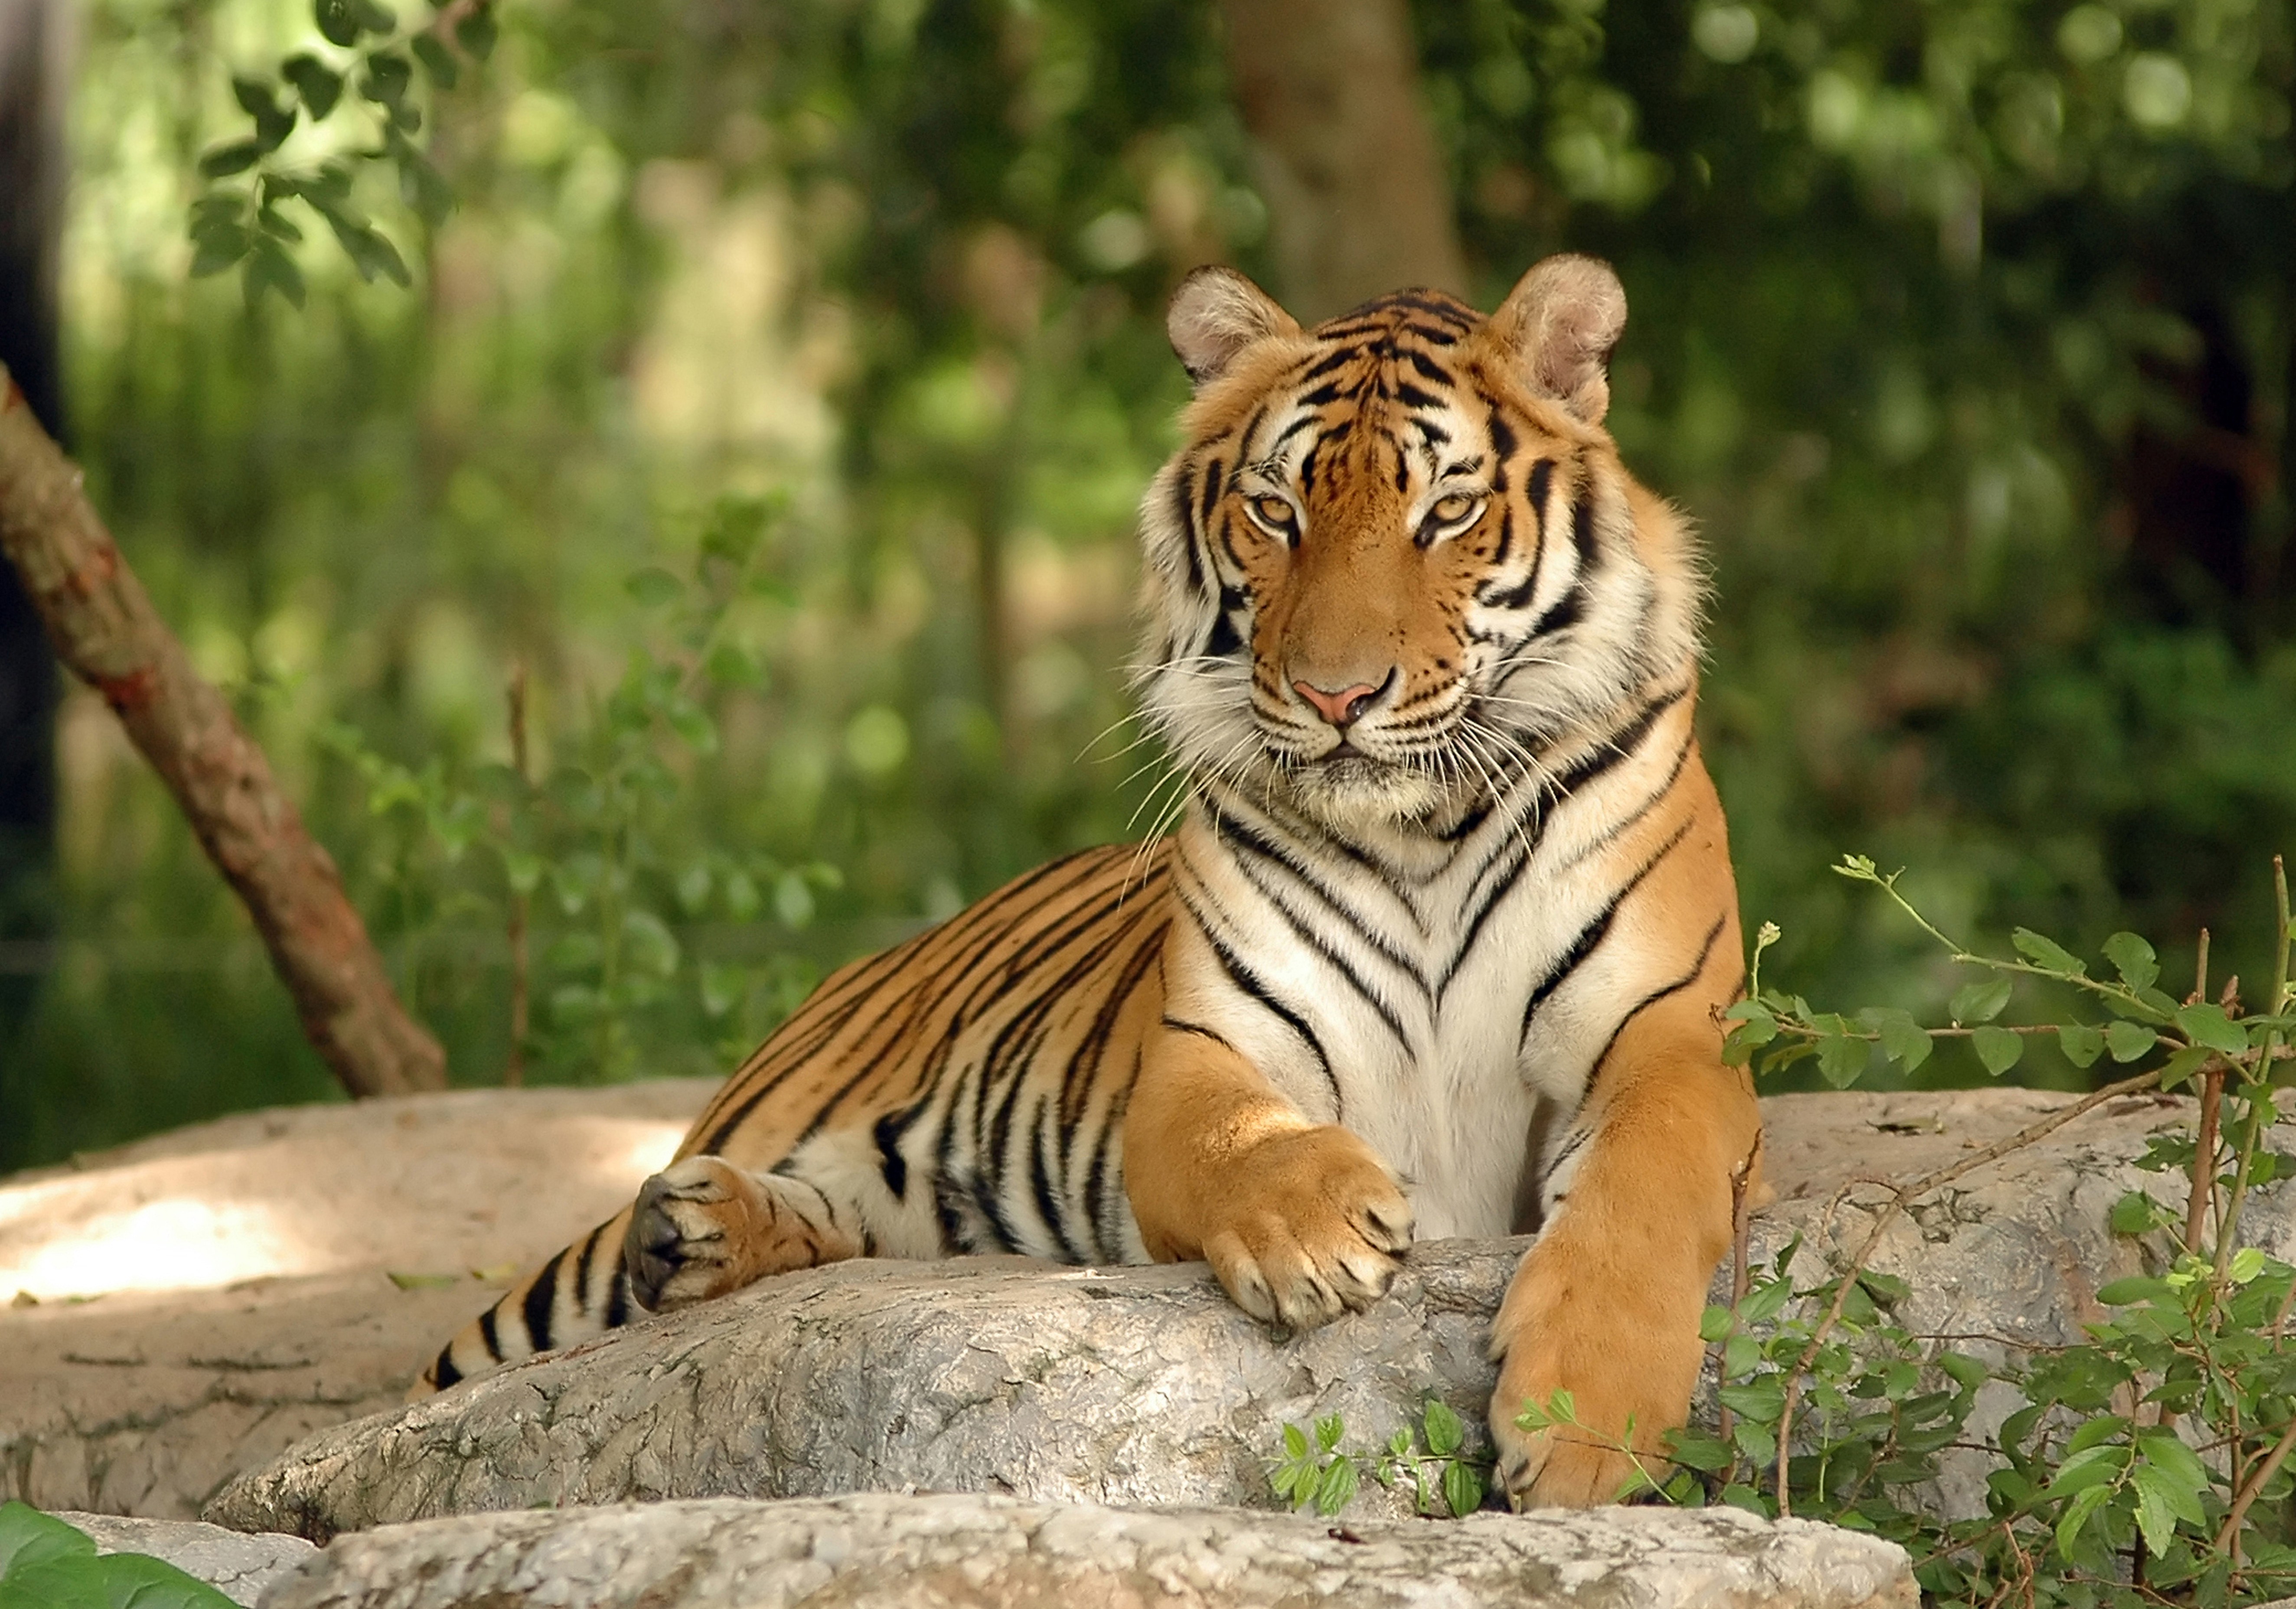 General 5296x3712 tiger animals nature mammals big cats